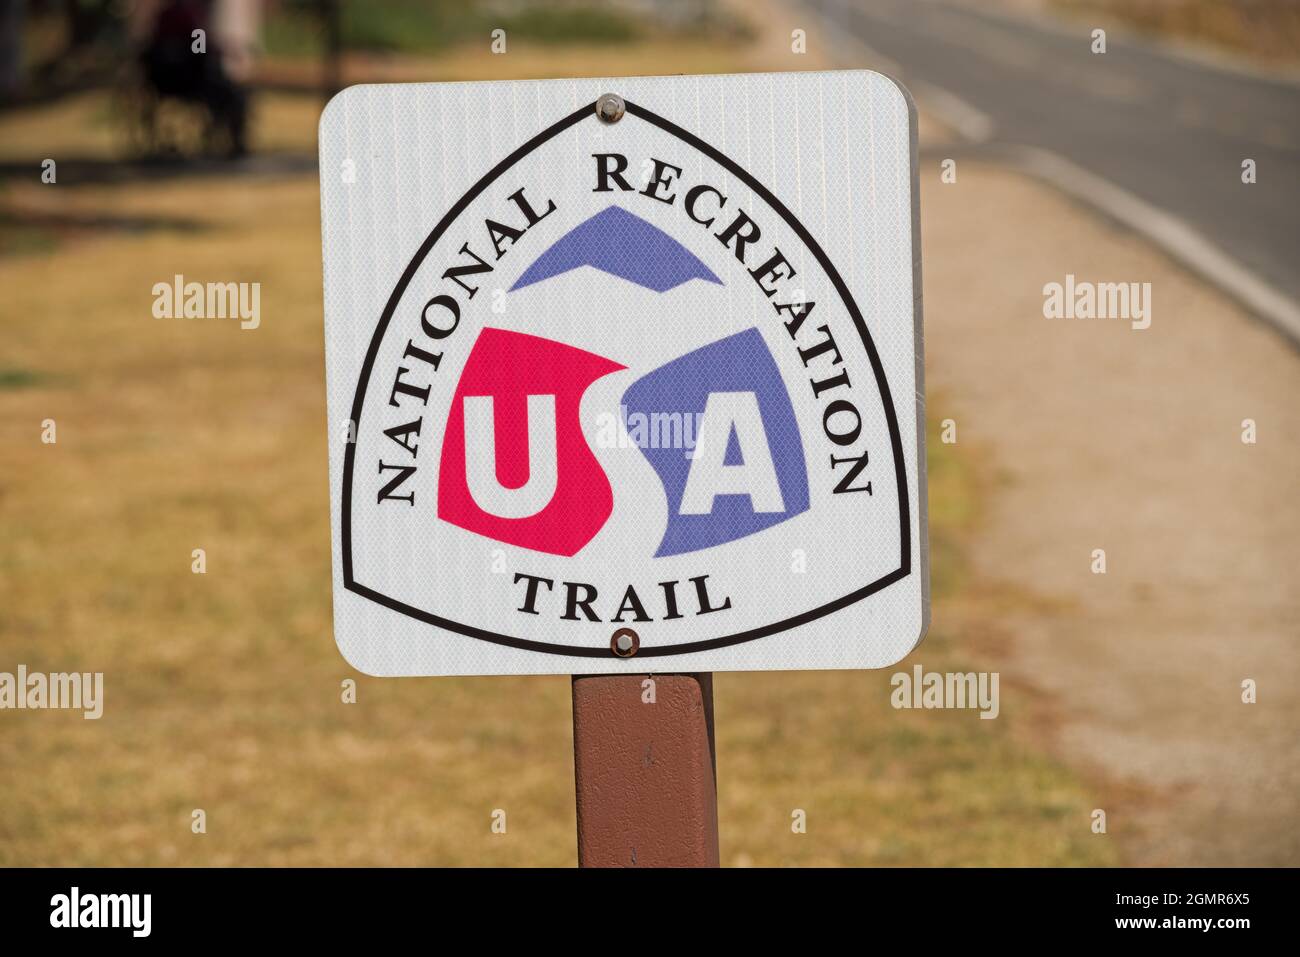 National Recreation Trail Schild entlang eines asphaltierten Radweges Stockfoto